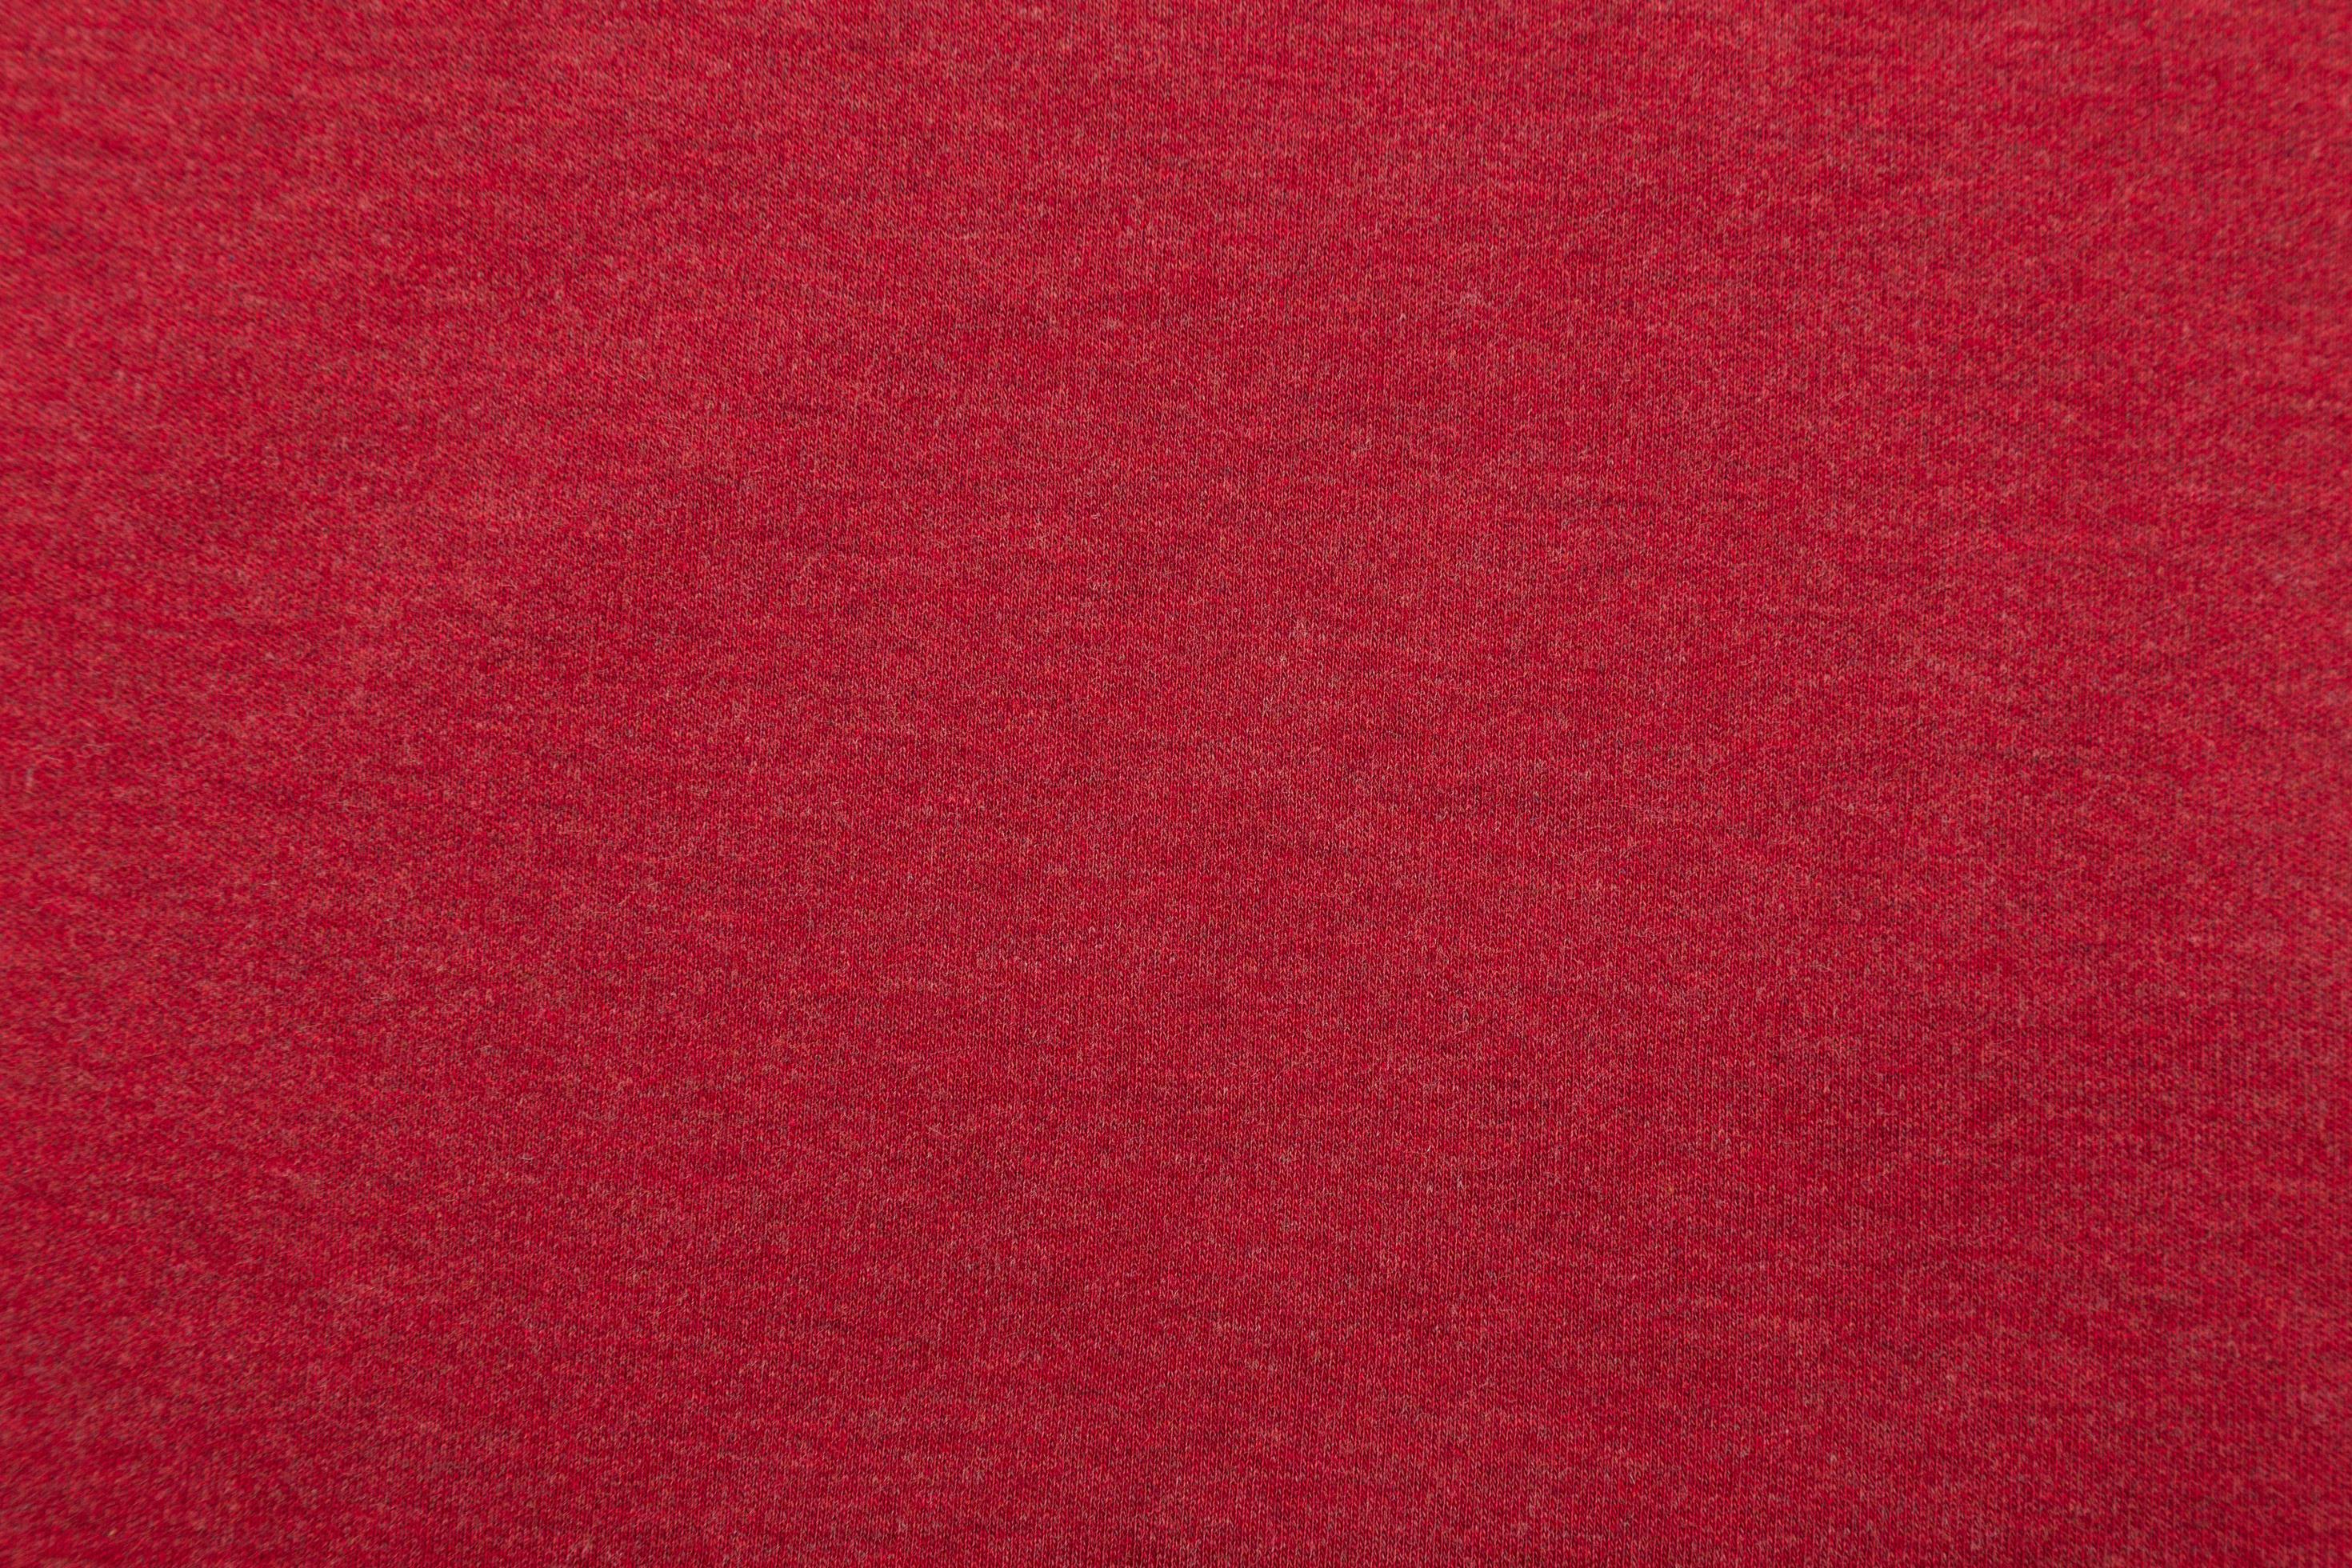 rot leinwand stoff textur hintergrund - Lizenzfreies Bild